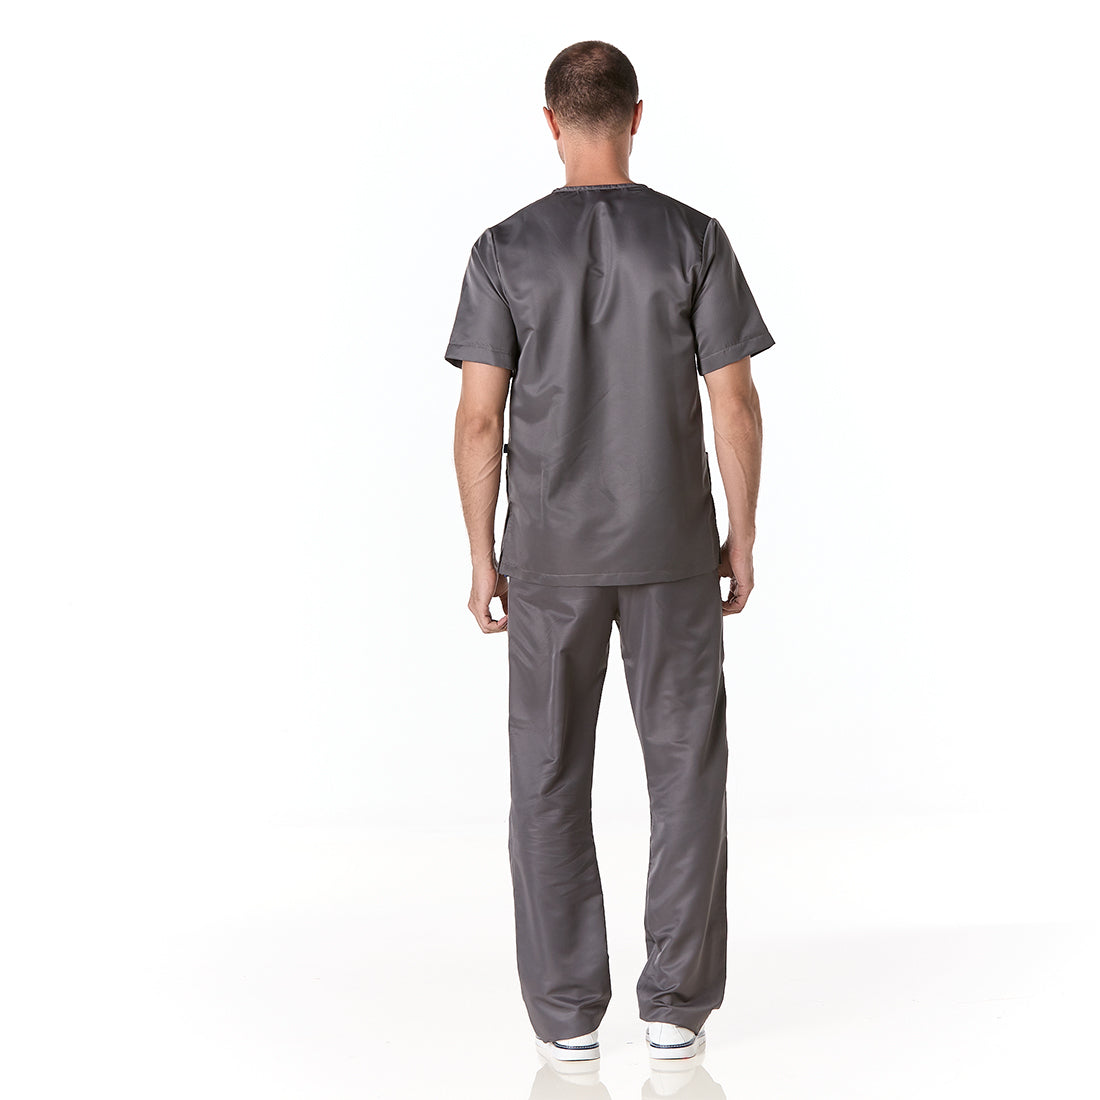 Hombre vistiendo pijama sanitario color gris oscuro con cuello en v y pantalon recto - espalda